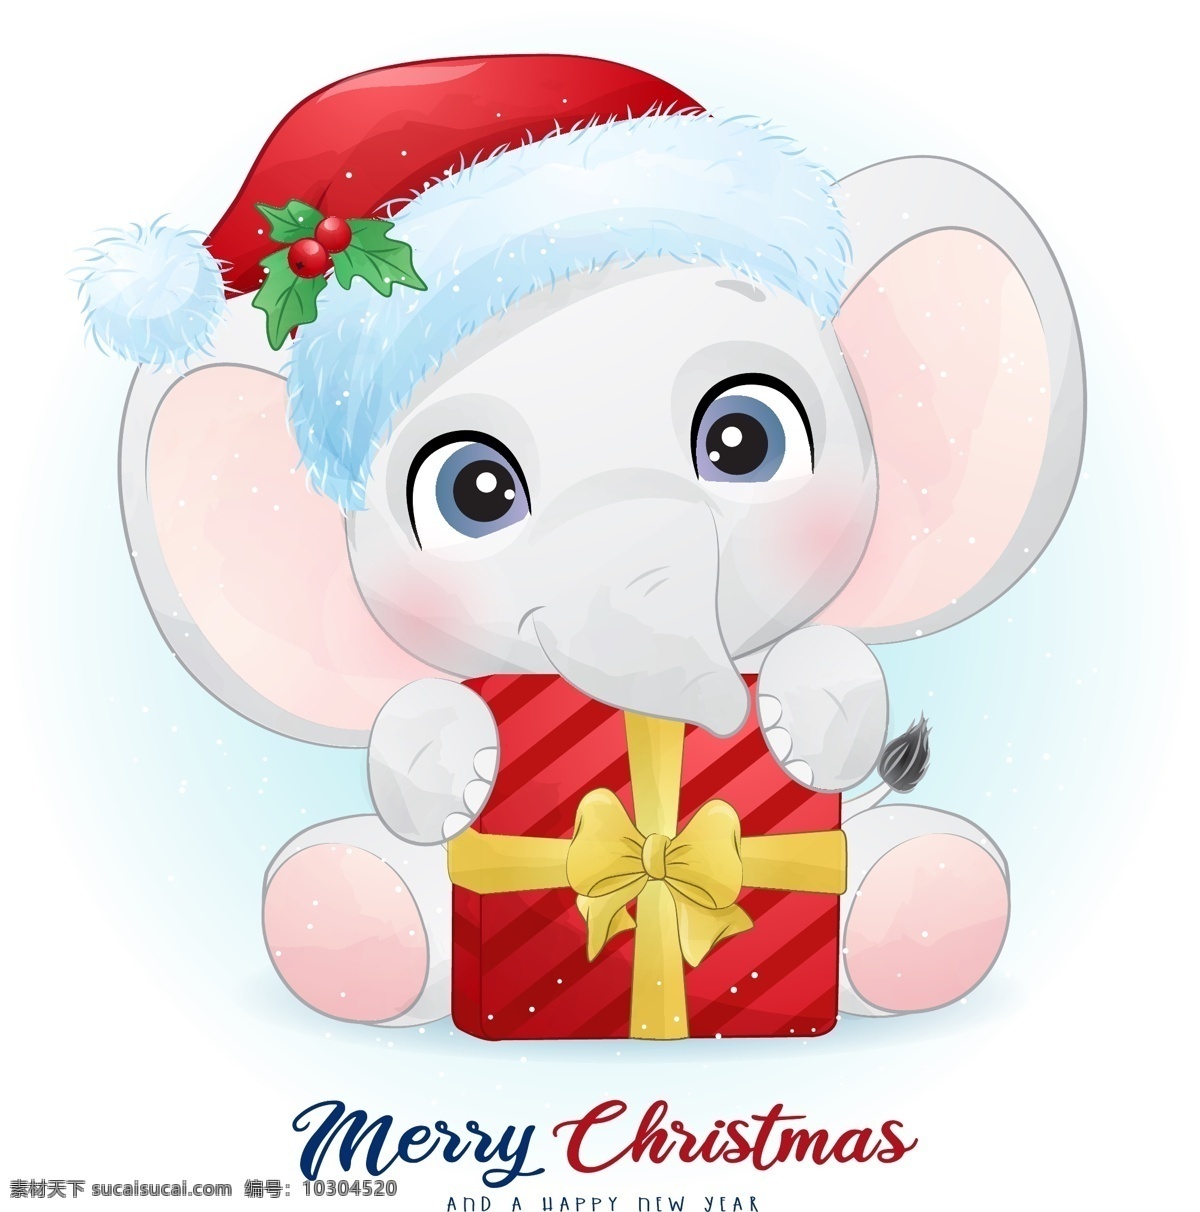 手绘 卡通 大象 手绘卡通动物 可爱动物 可爱 q版 卡哇伊 圣诞 圣诞节 动物圣诞 卡通动物生物 卡通设计